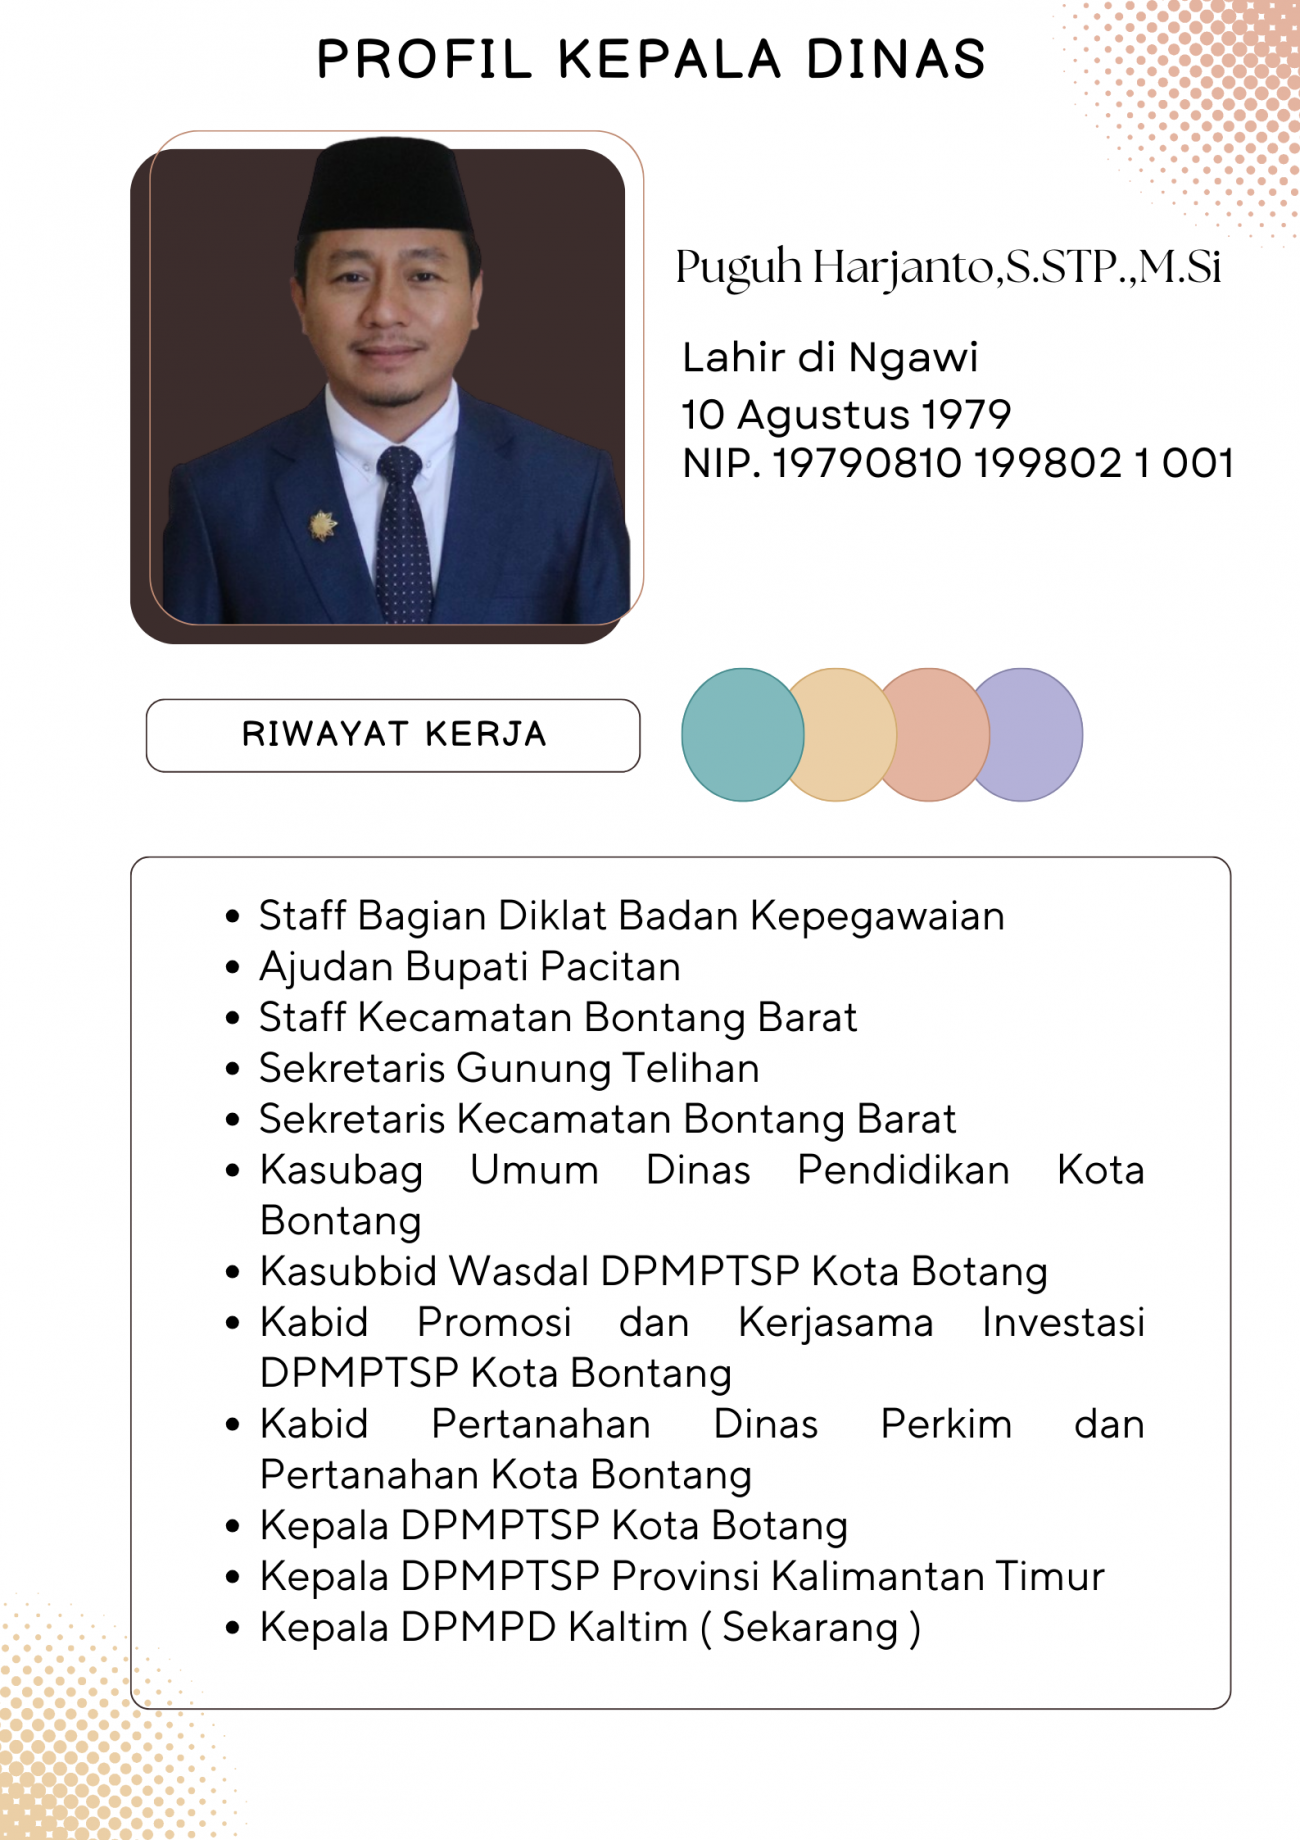 Profil Kepala Dinas